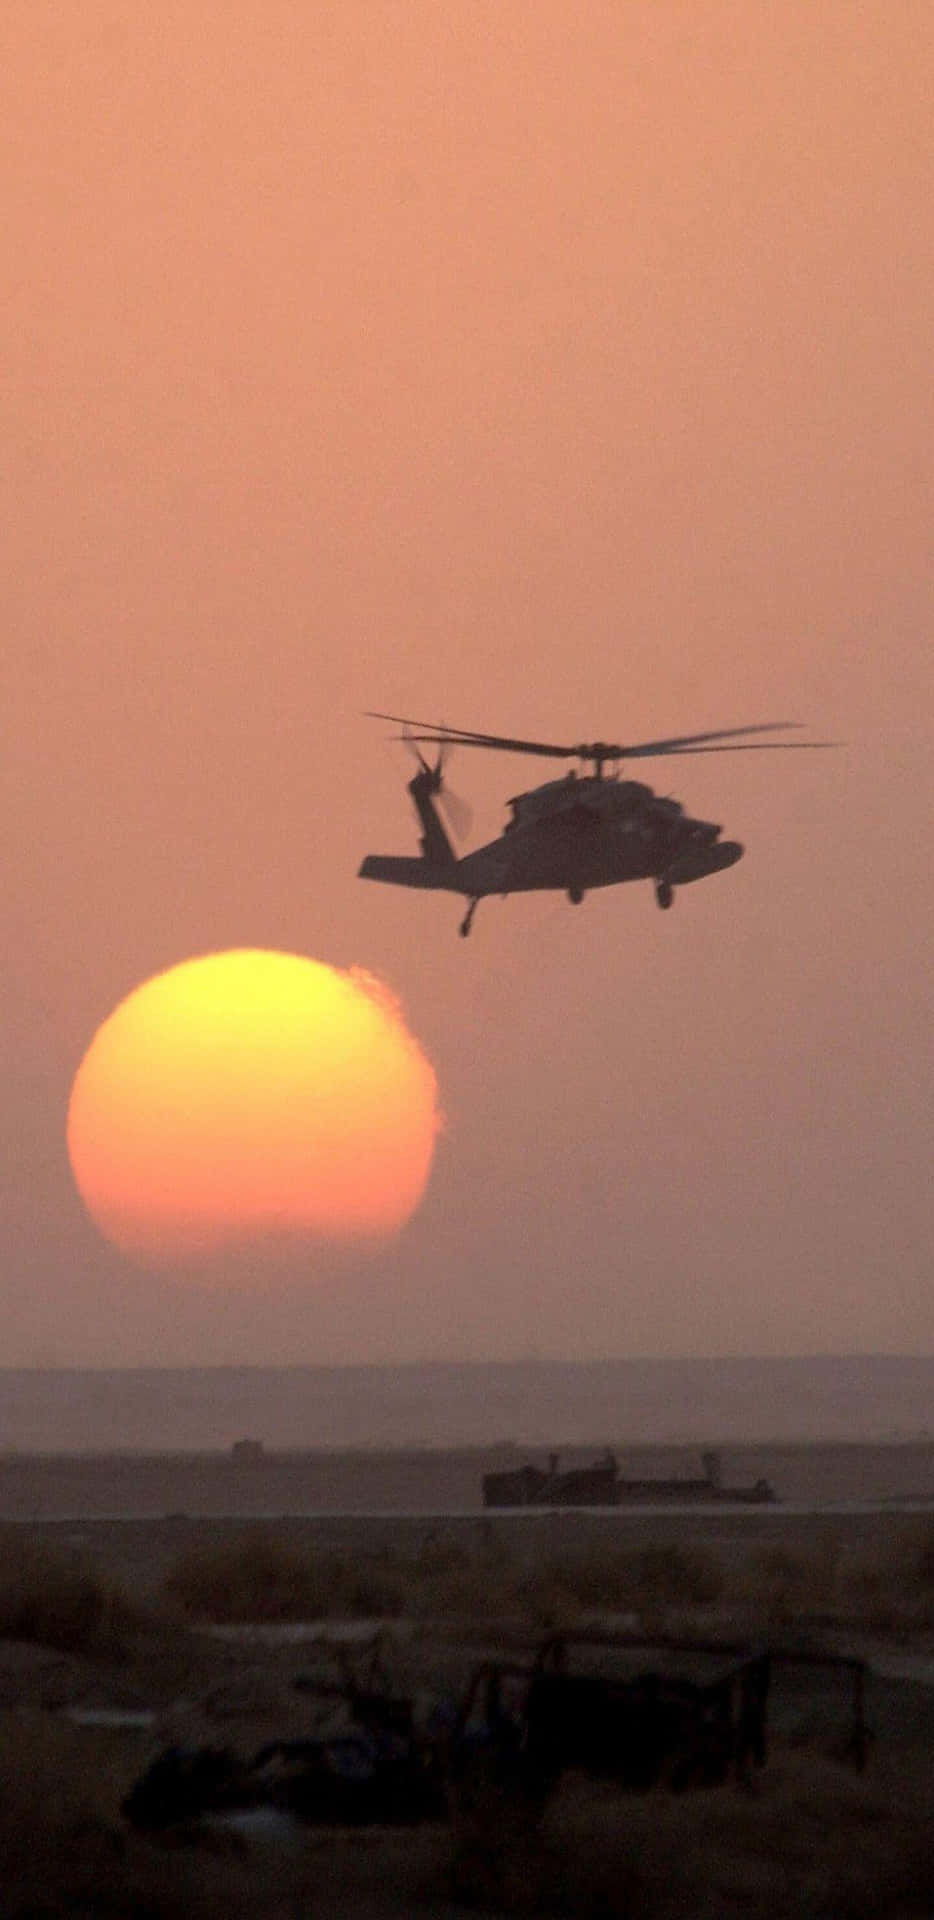 Pixel3xl Hintergrund Mit Fliegenden Hubschraubern Im Irak